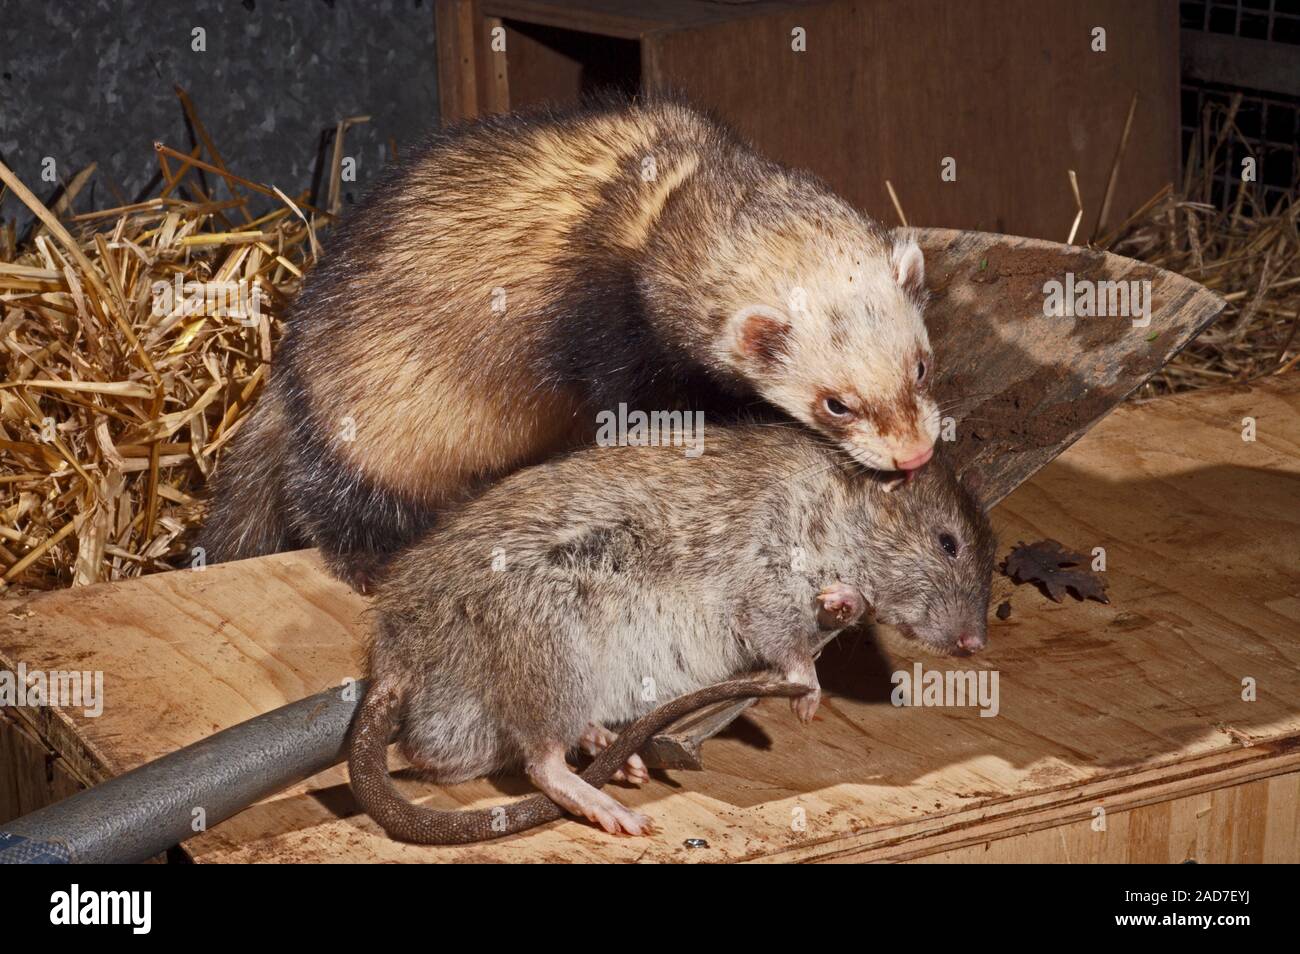 POLECAT FERRET Mustela putorius furo with dead Brown Rat (Rattus norvegicus) prey. UK Stock Photo